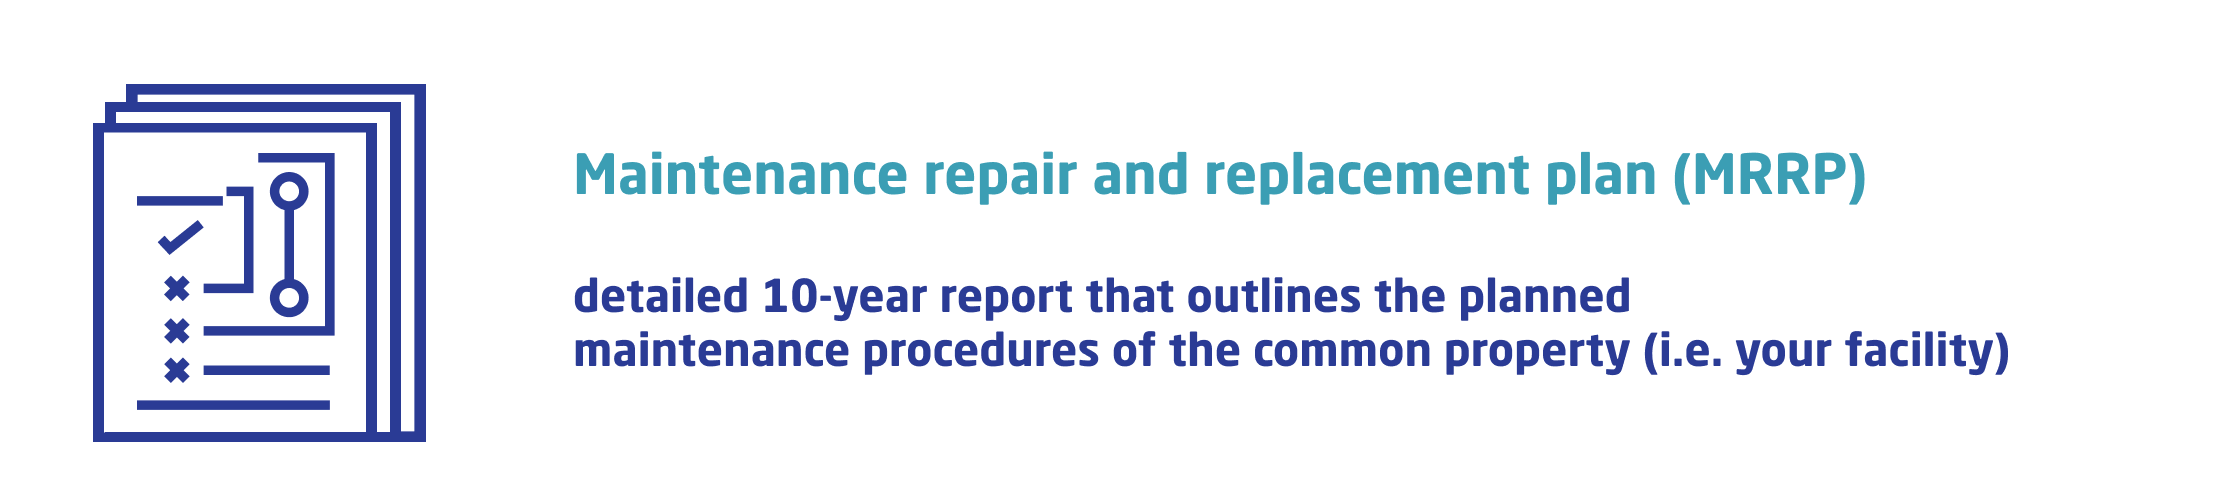 maintenance repair and replacement plan